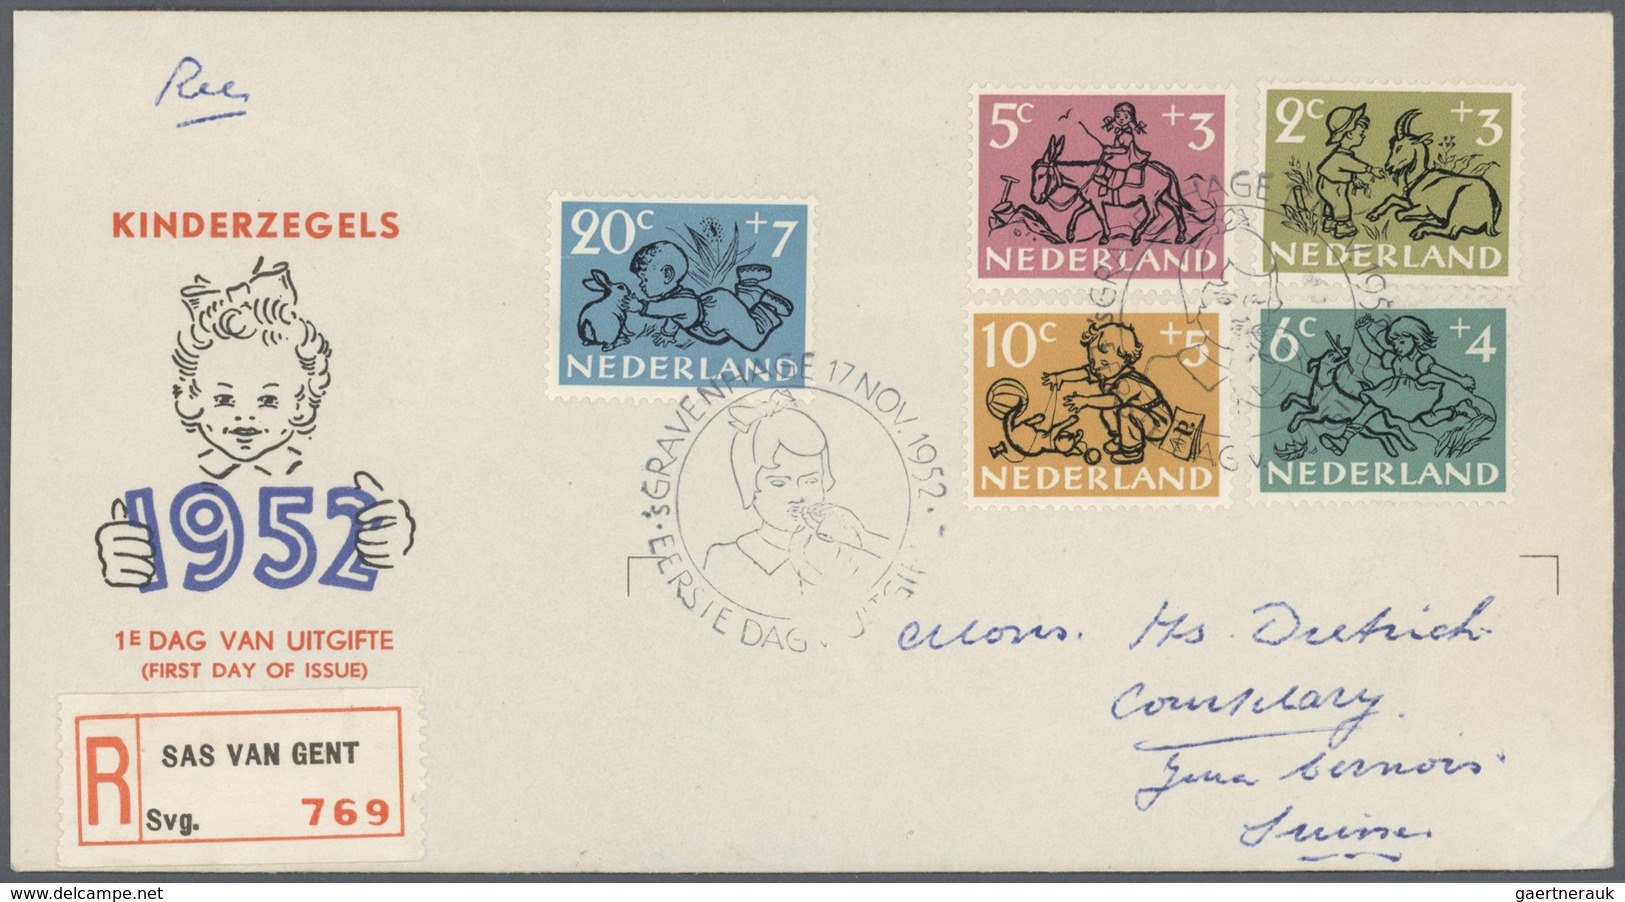 GA/Br/ Niederlande: 1946 - 1998, umfangreiche Briefepartie von ca. 220 Belegen mit vielen besseren Frankatu